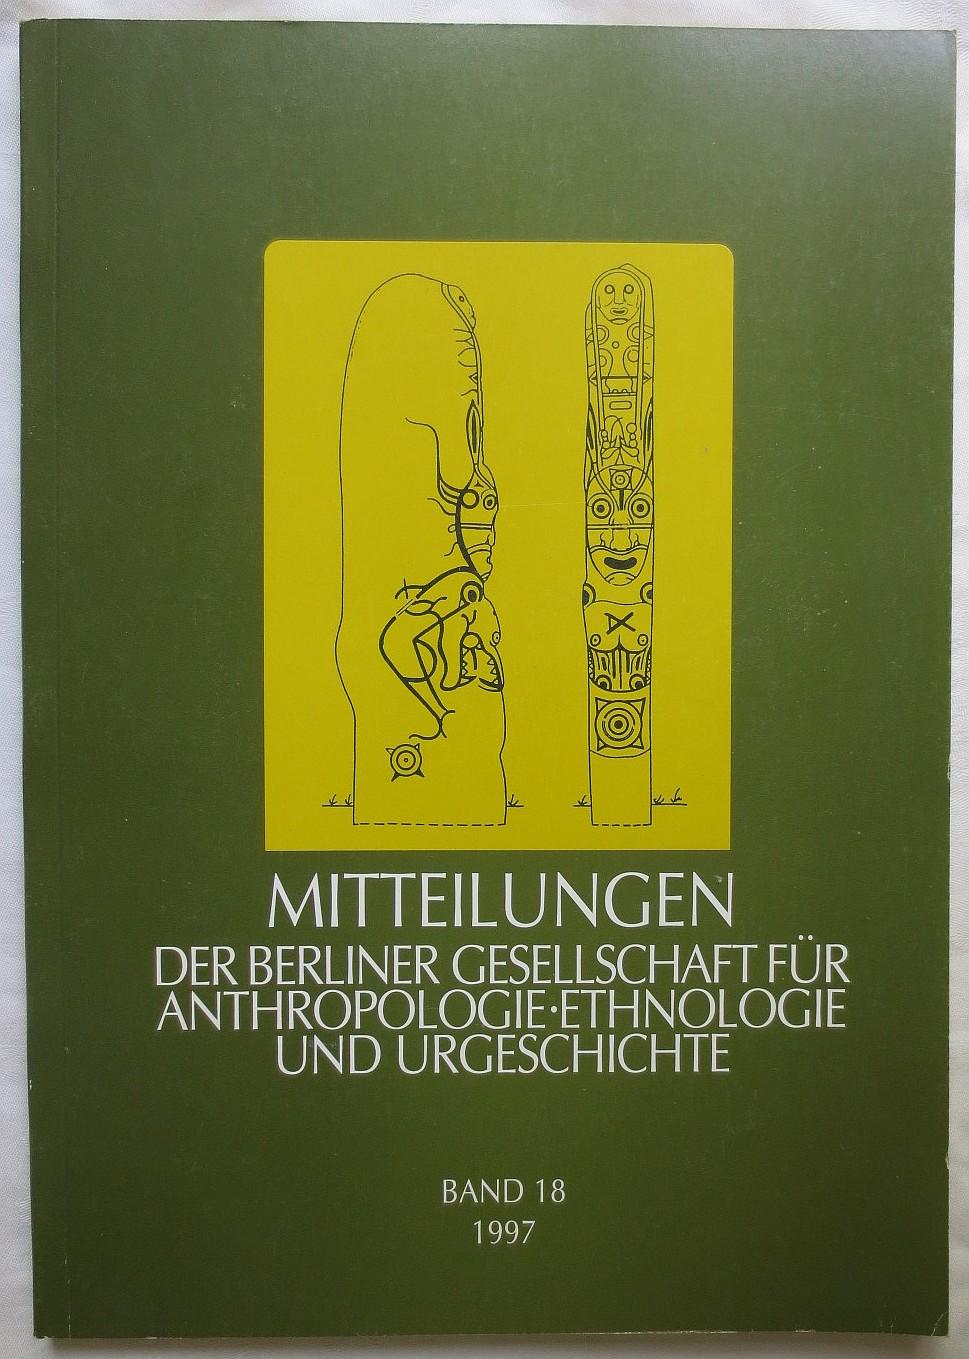 Mitteilungen der Berliner Gesellschaft für Anthropologie, Ethnologie und Urgeschichte, Band 19, 1997 - Hänsel, Bernhard ; Ullrich, Herbert (Hrsg.)